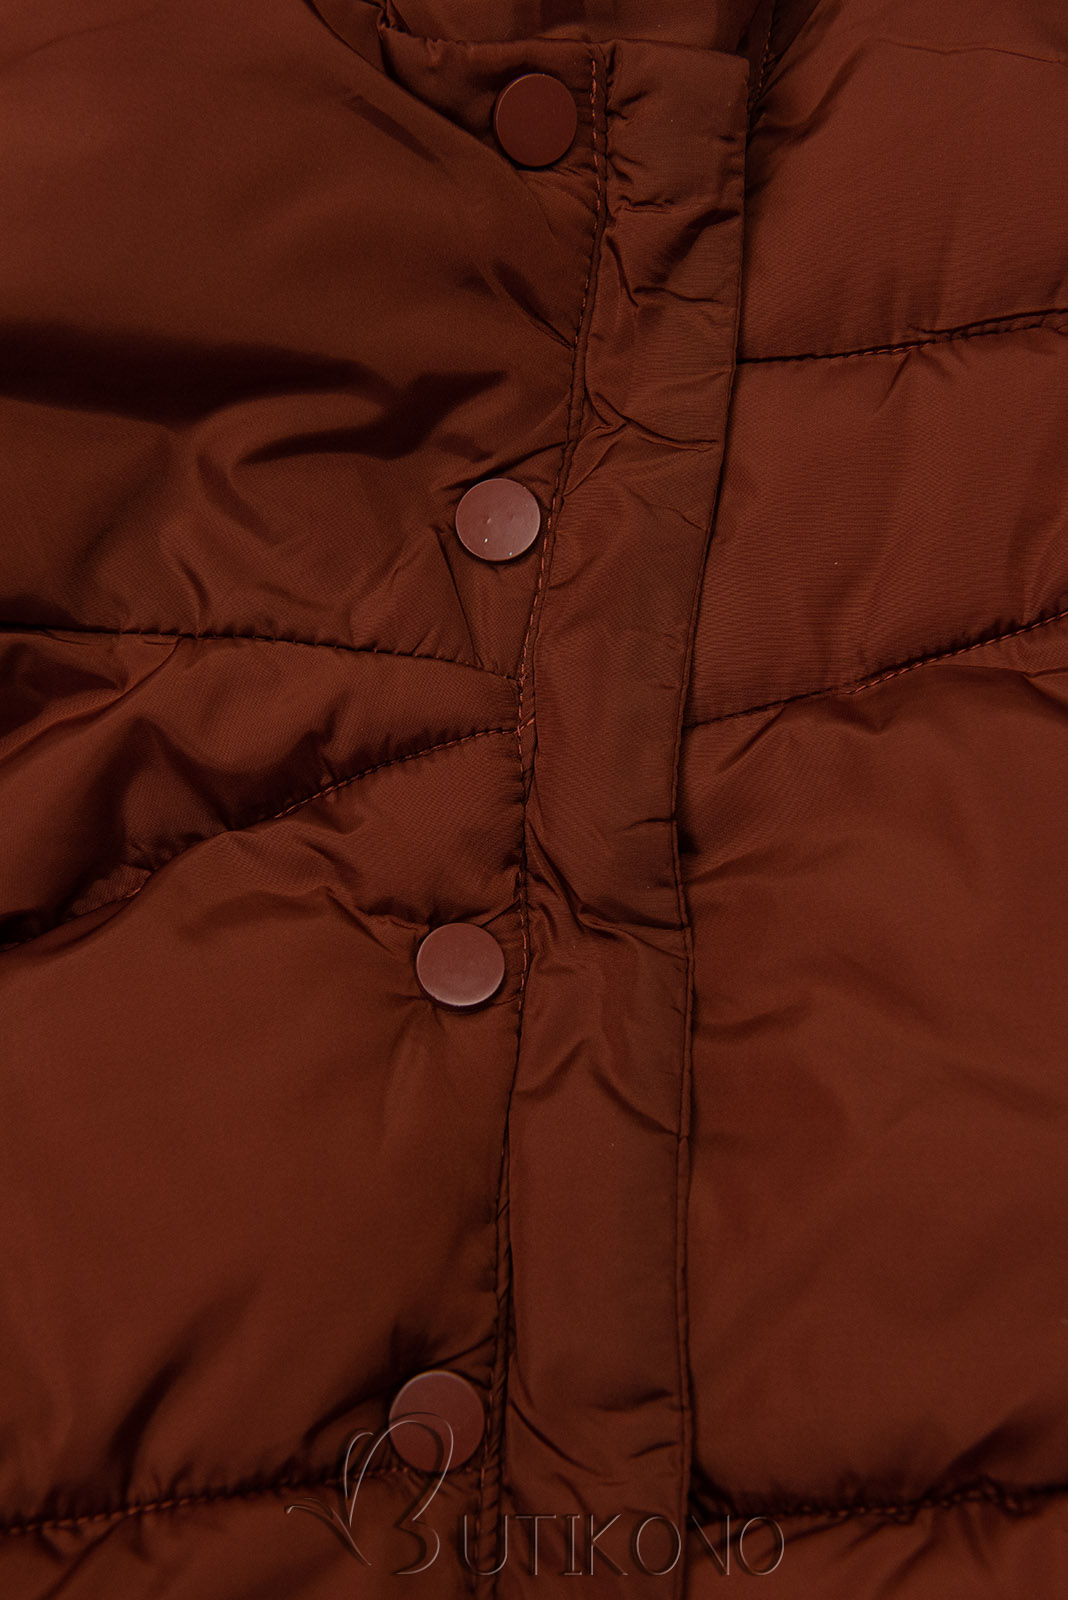 Hnědočervená prošívaná zimní bunda s vysokým límcem